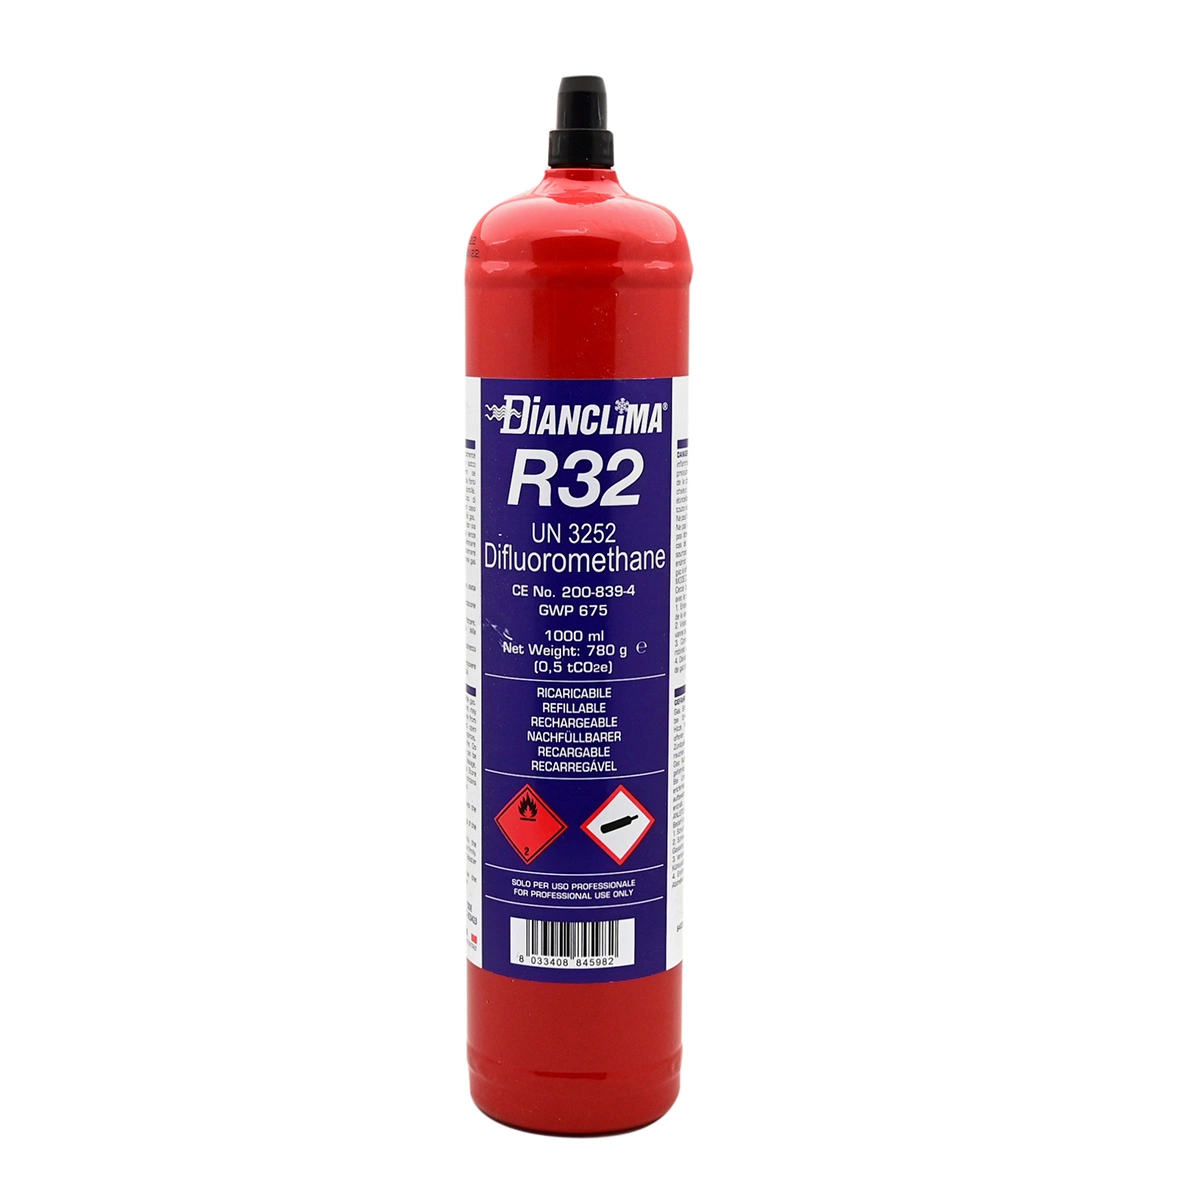 BOMBOLA RICARICABILE CONTENENTE GAS REFRIGERANTE R32. Misura 780 gr